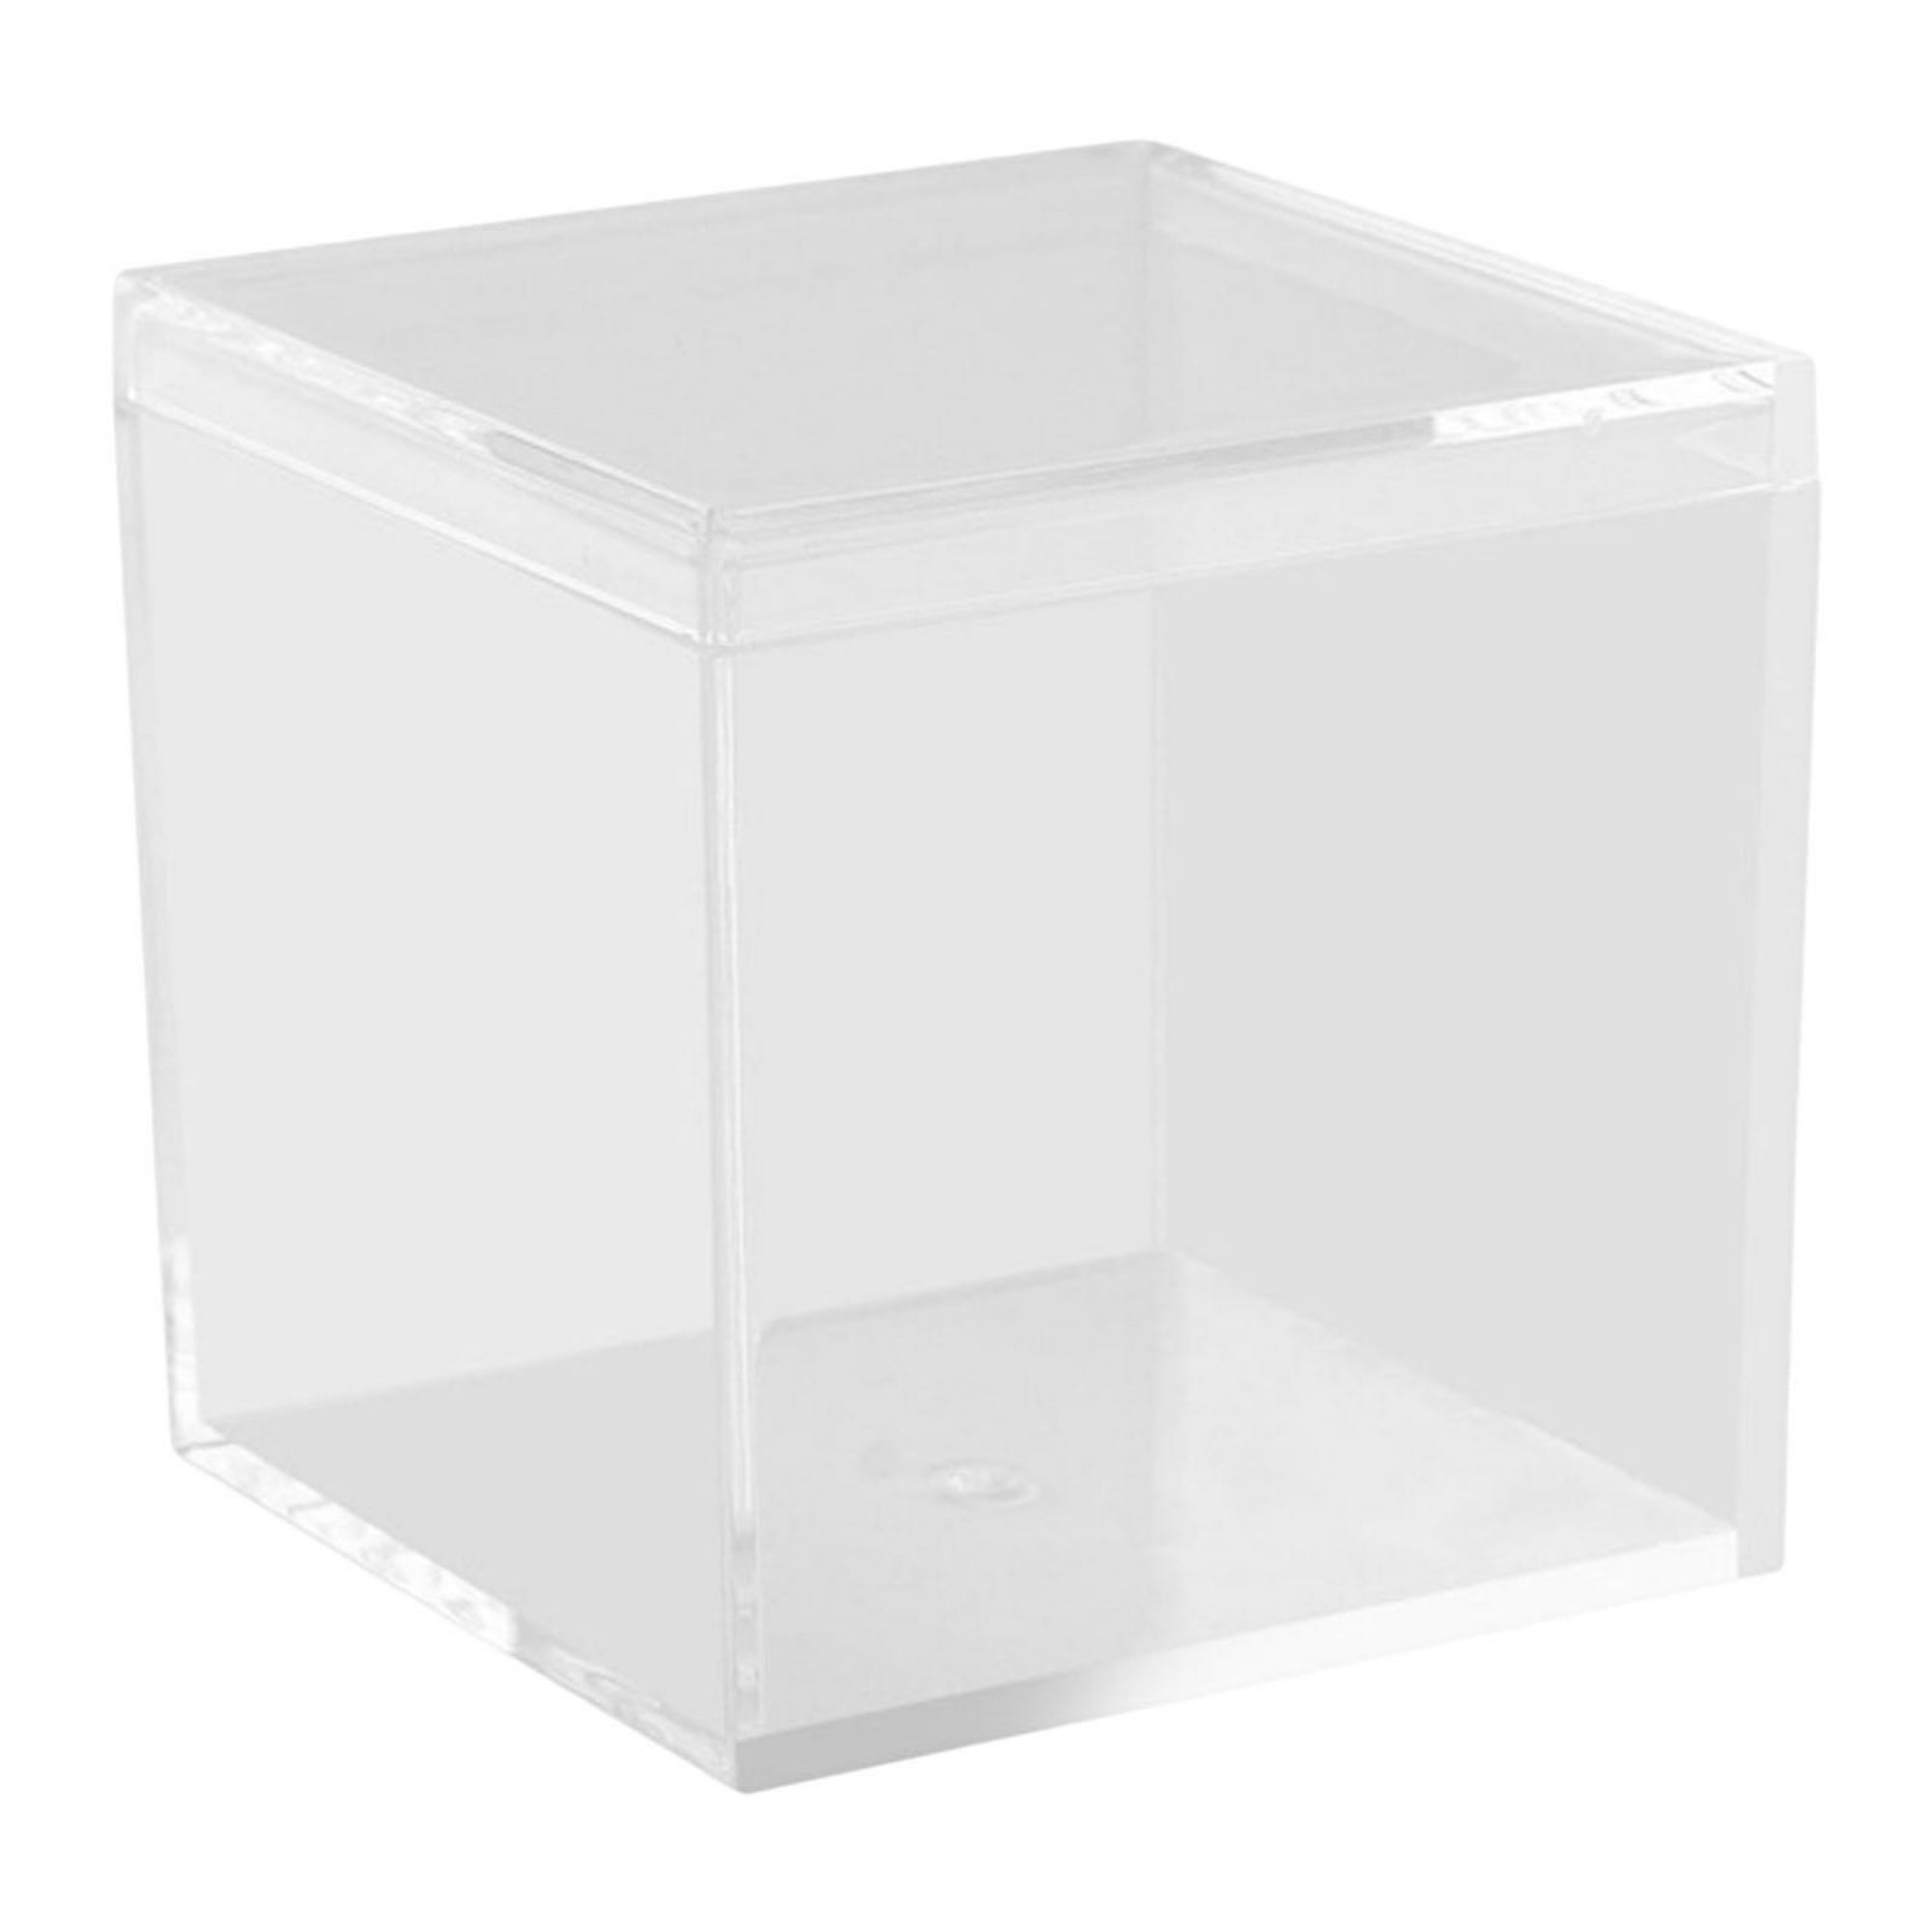 Cajas de regalo transparentes, contenedores cuadrados vacíos en caja, cajas  de cubo, contenedor de p Sunnimix Caja de embalaje